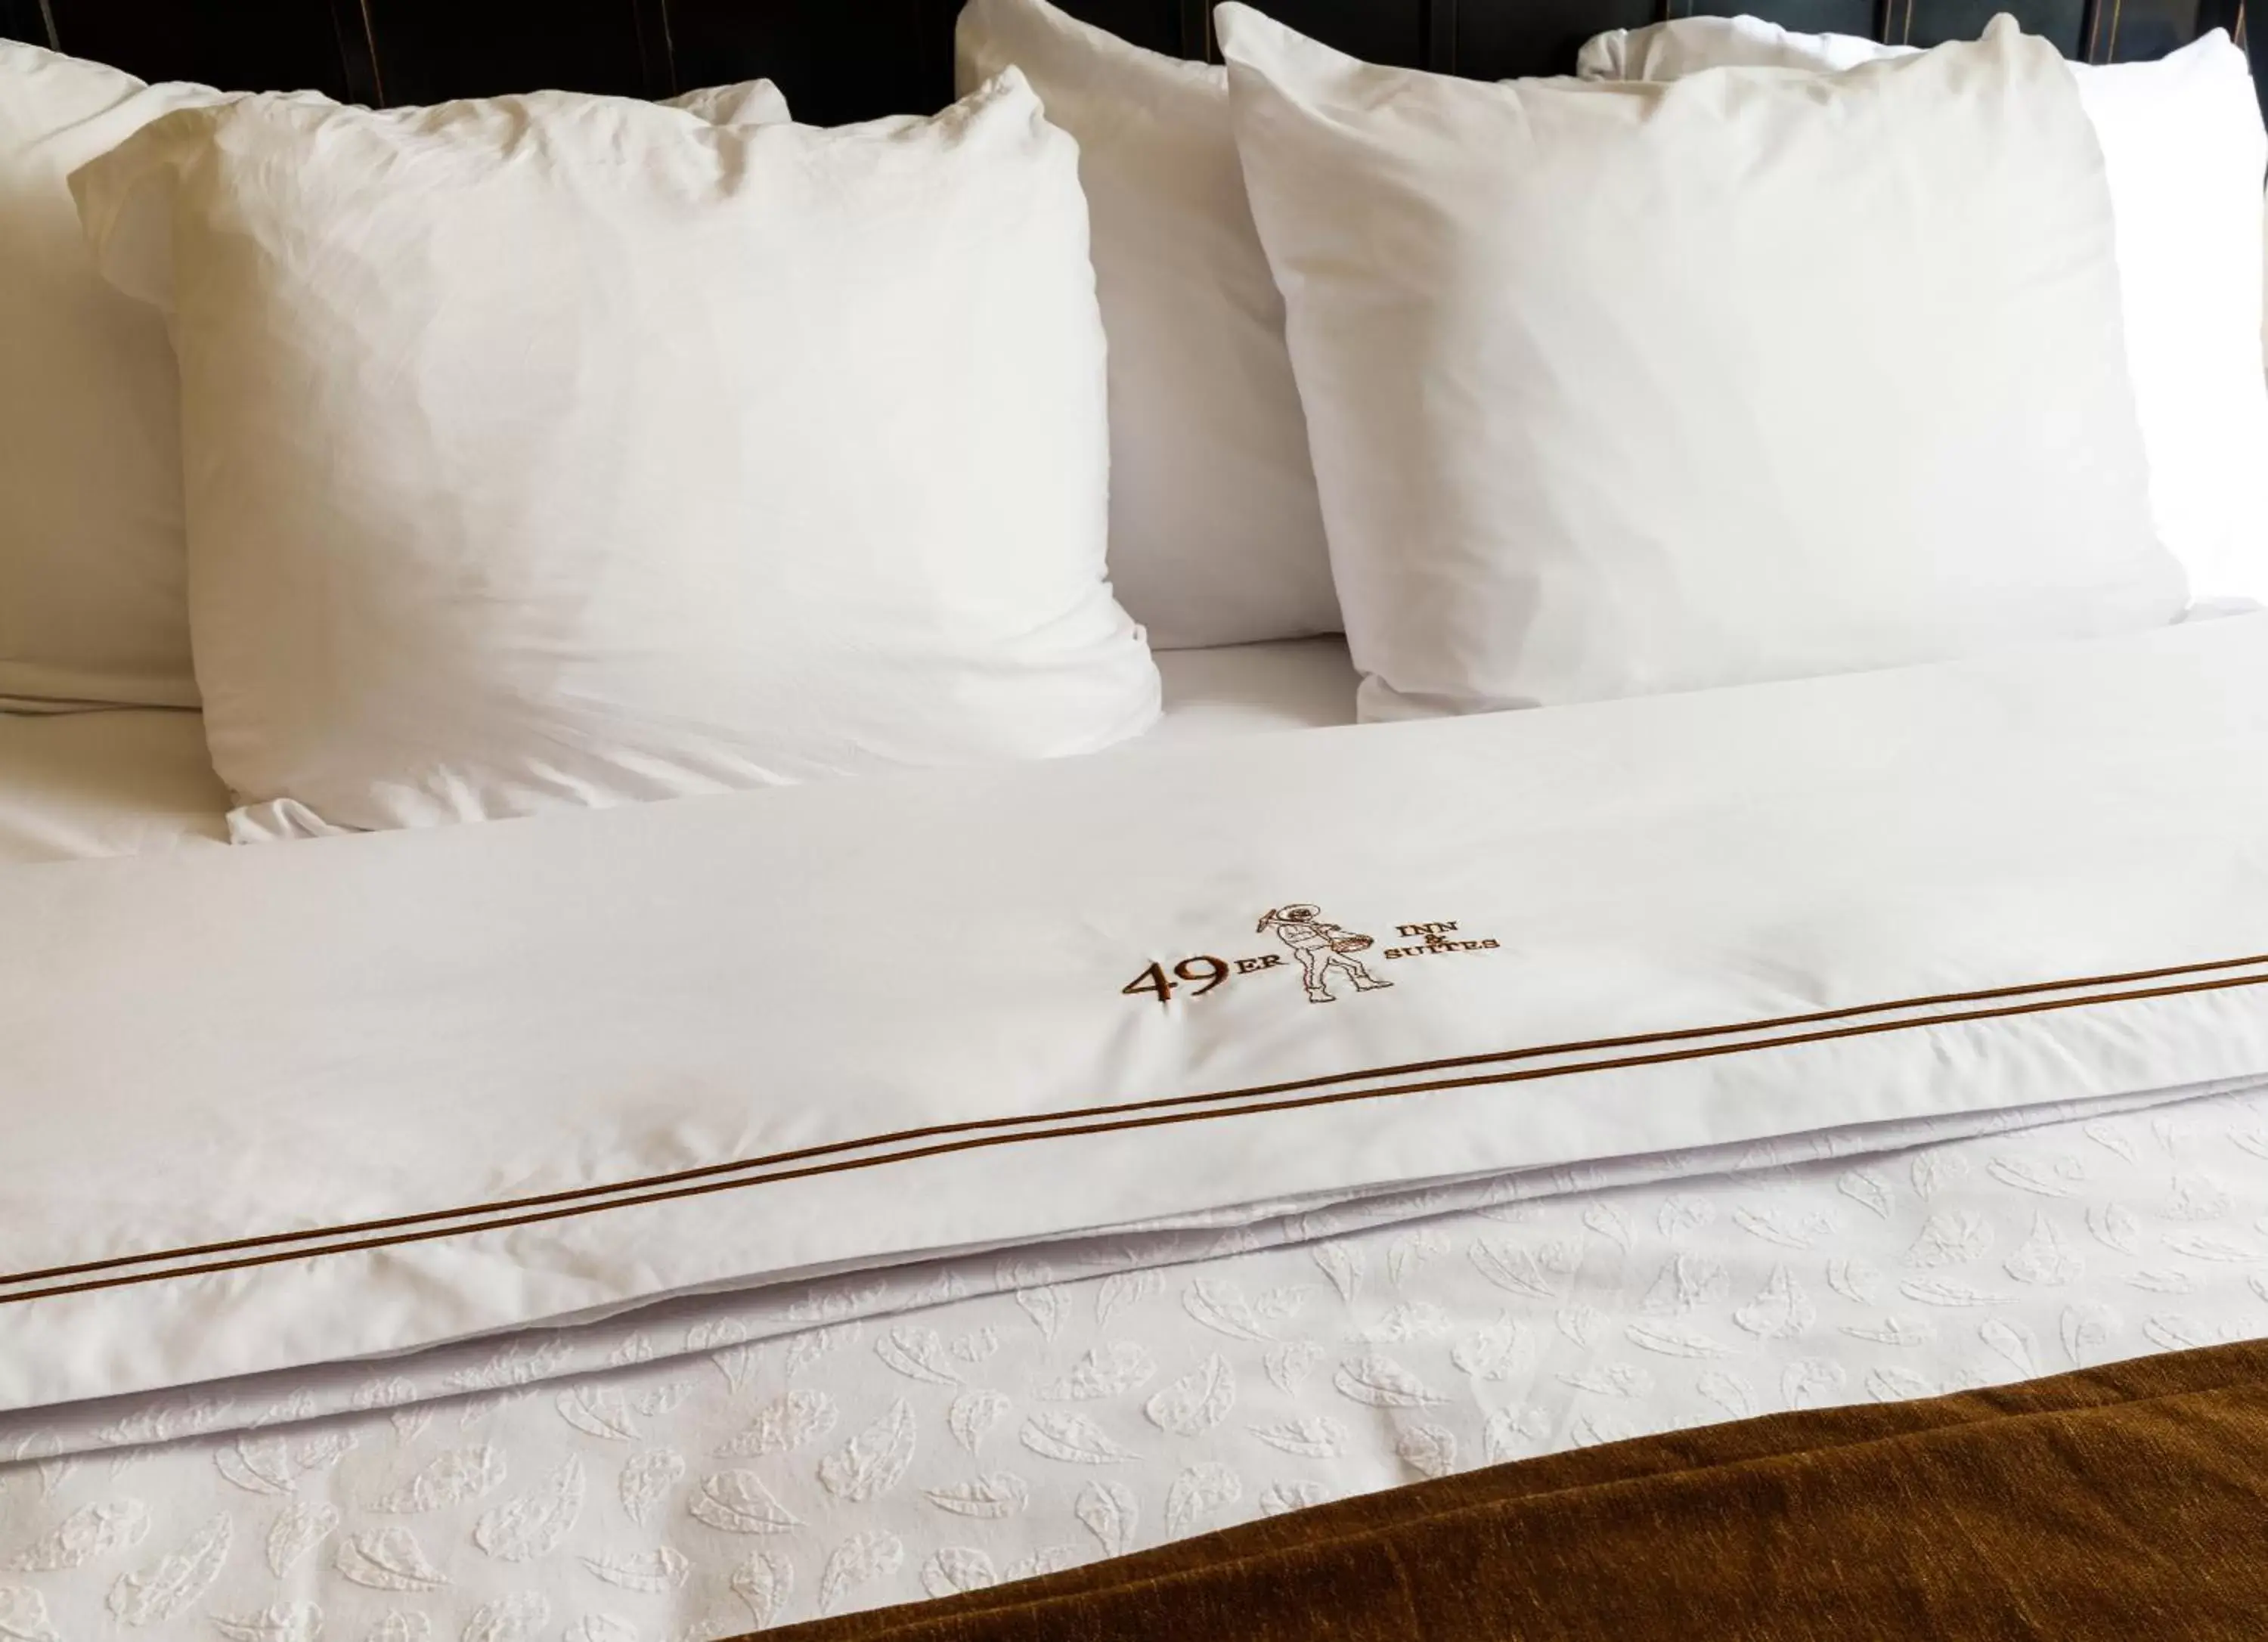 Decorative detail, Bed in 49'er Inn & Suites